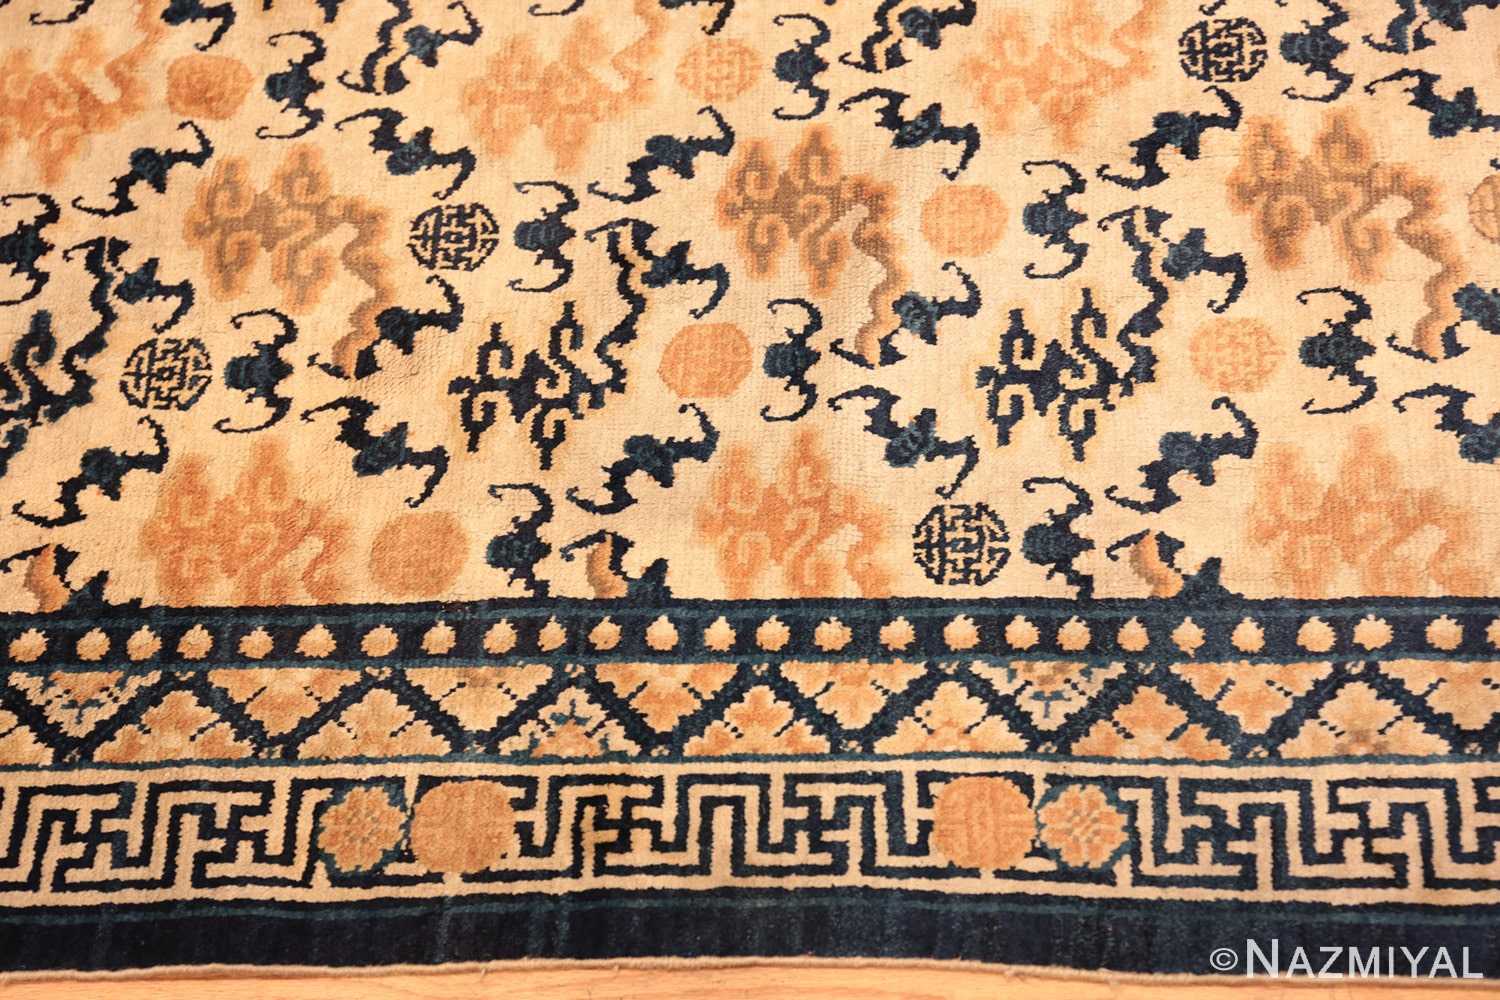 Border antique Chinese Ningxia rug 70213 by Nazmiyal